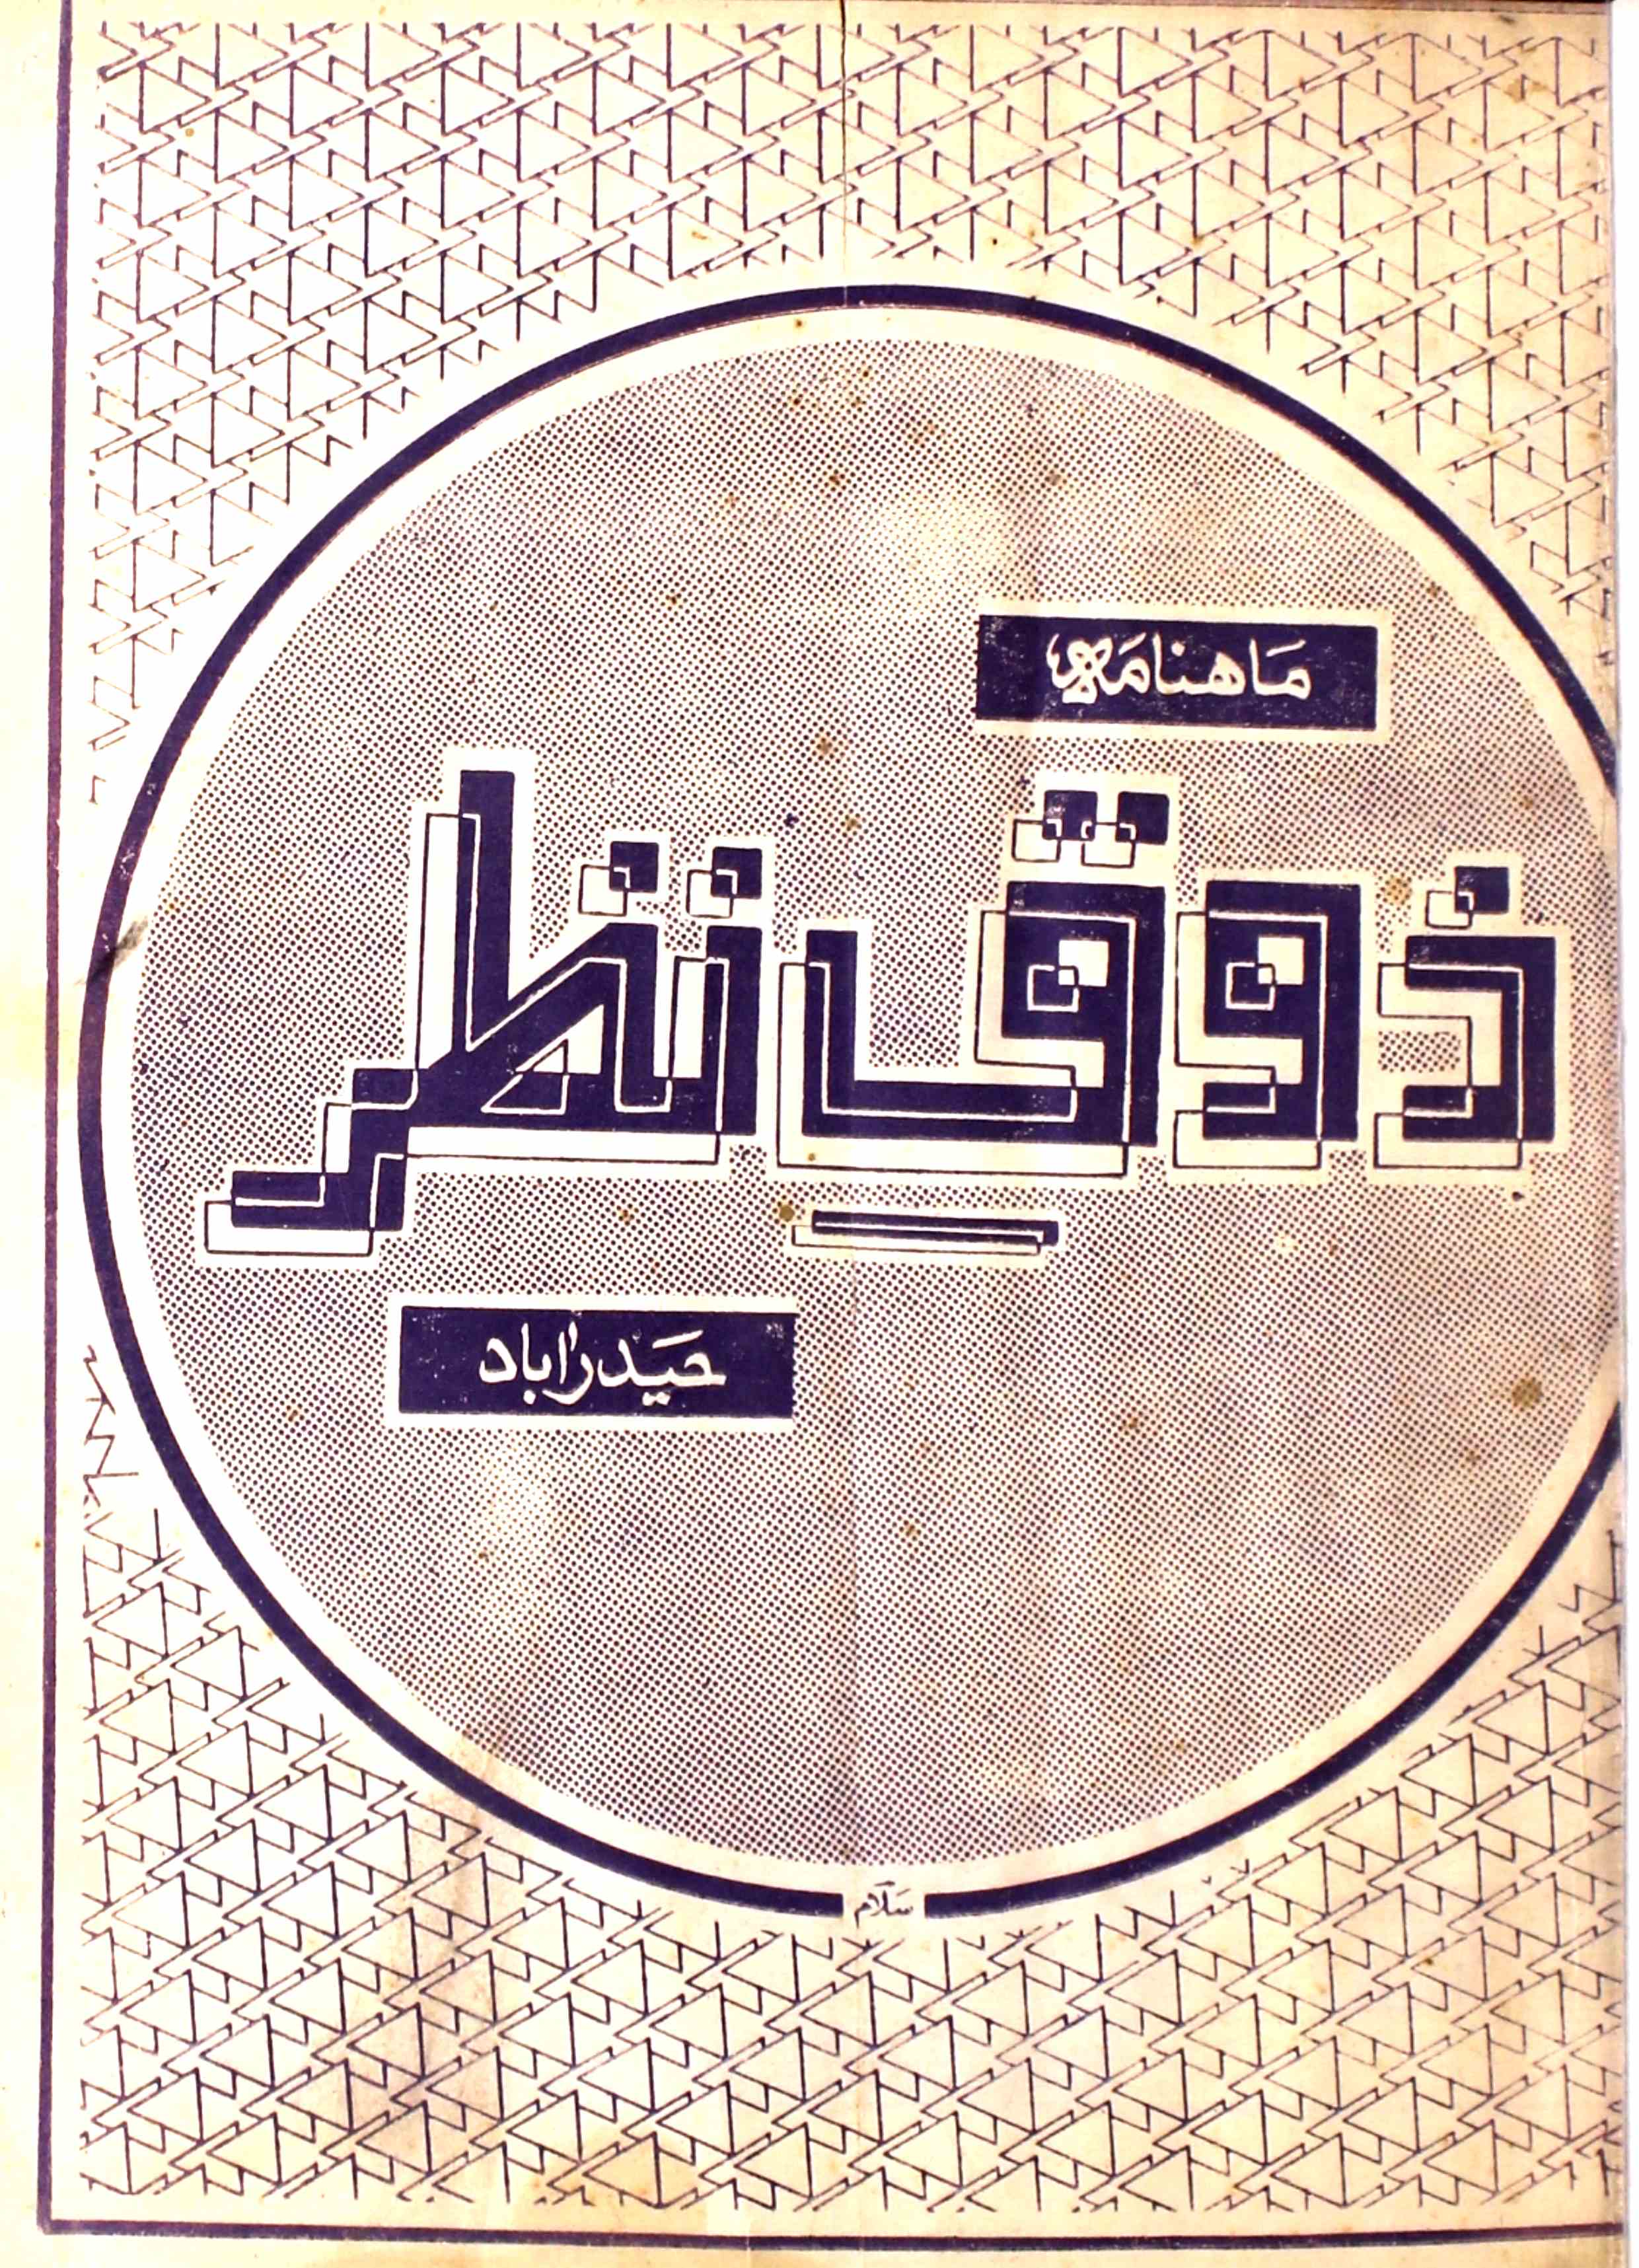 Zauq E Nazar Jild 2 Shumara 7 July 1986-Svk-Shumara Number-007